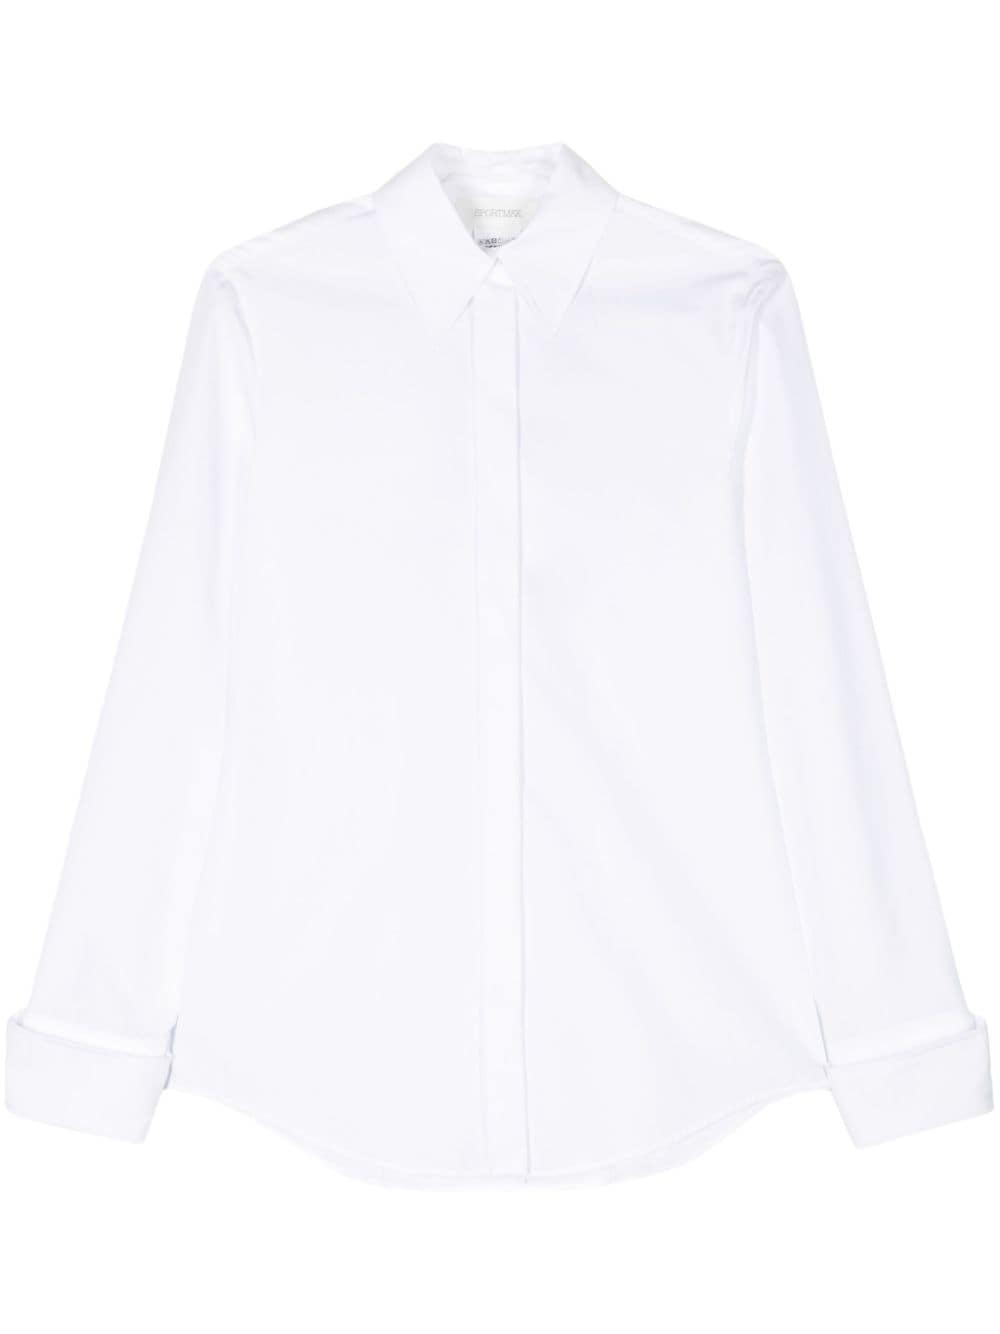 Sportmax cotton Oxford shirt - White von Sportmax